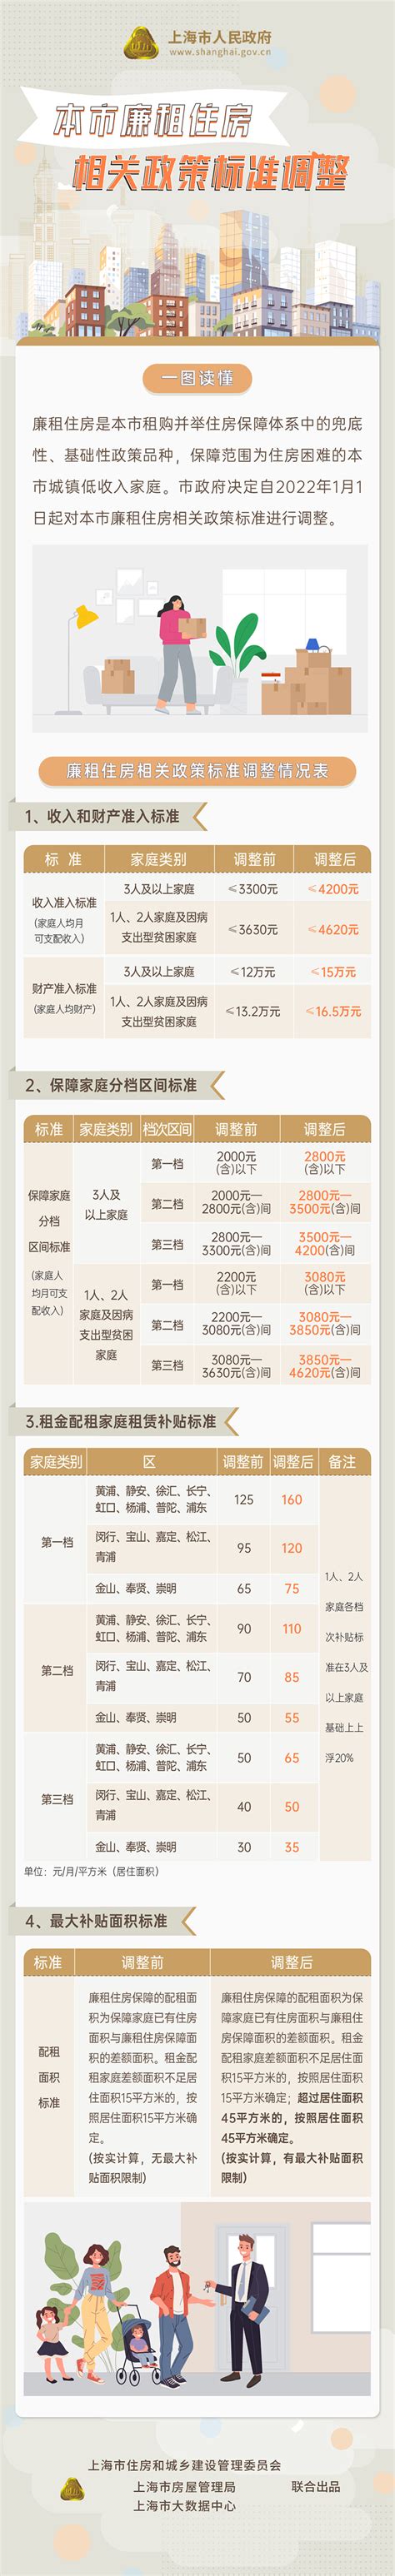 《上海市廉租住房相关政策标准调整》一图读懂_政策解读_房管局